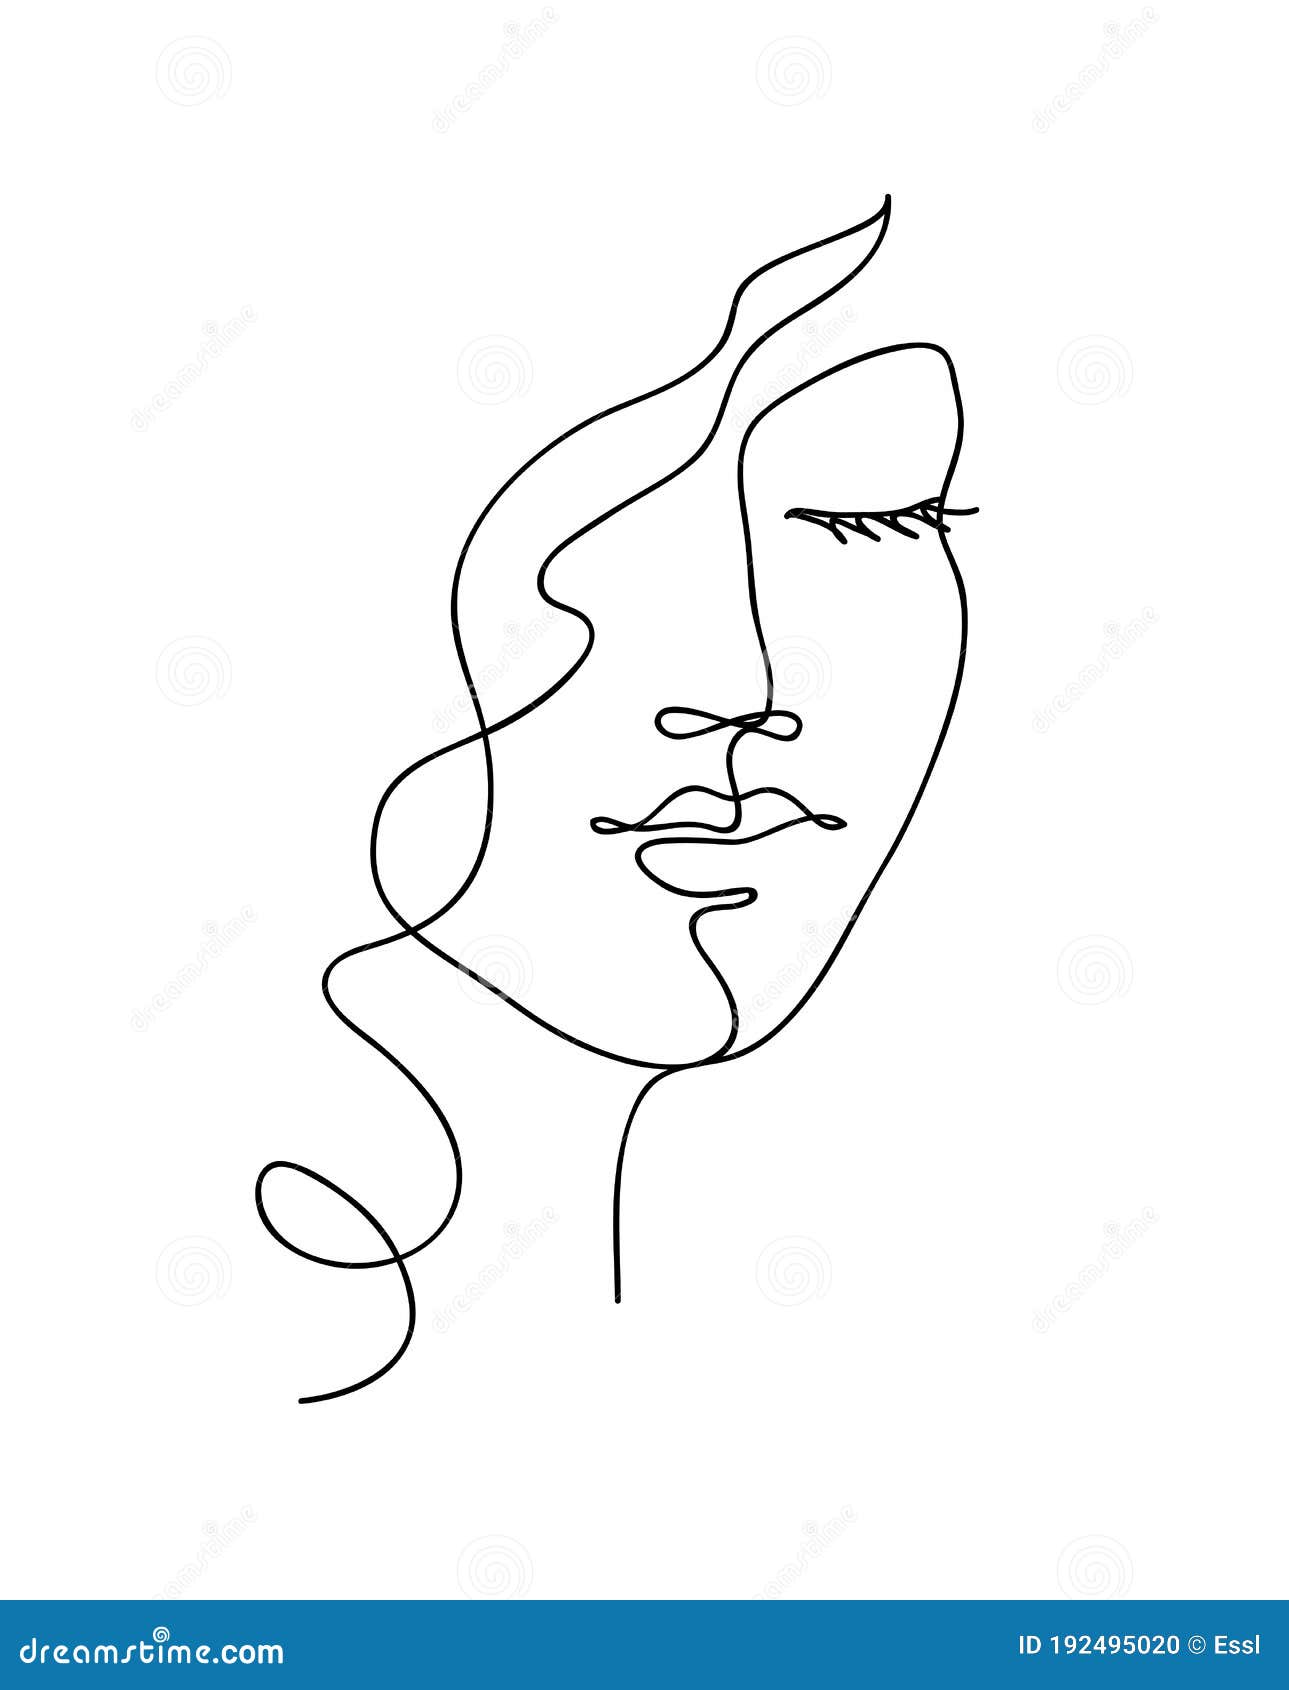 Abstract Vrouwengezicht Met Golvend Haar. Met De Zwarte En Witte Hand